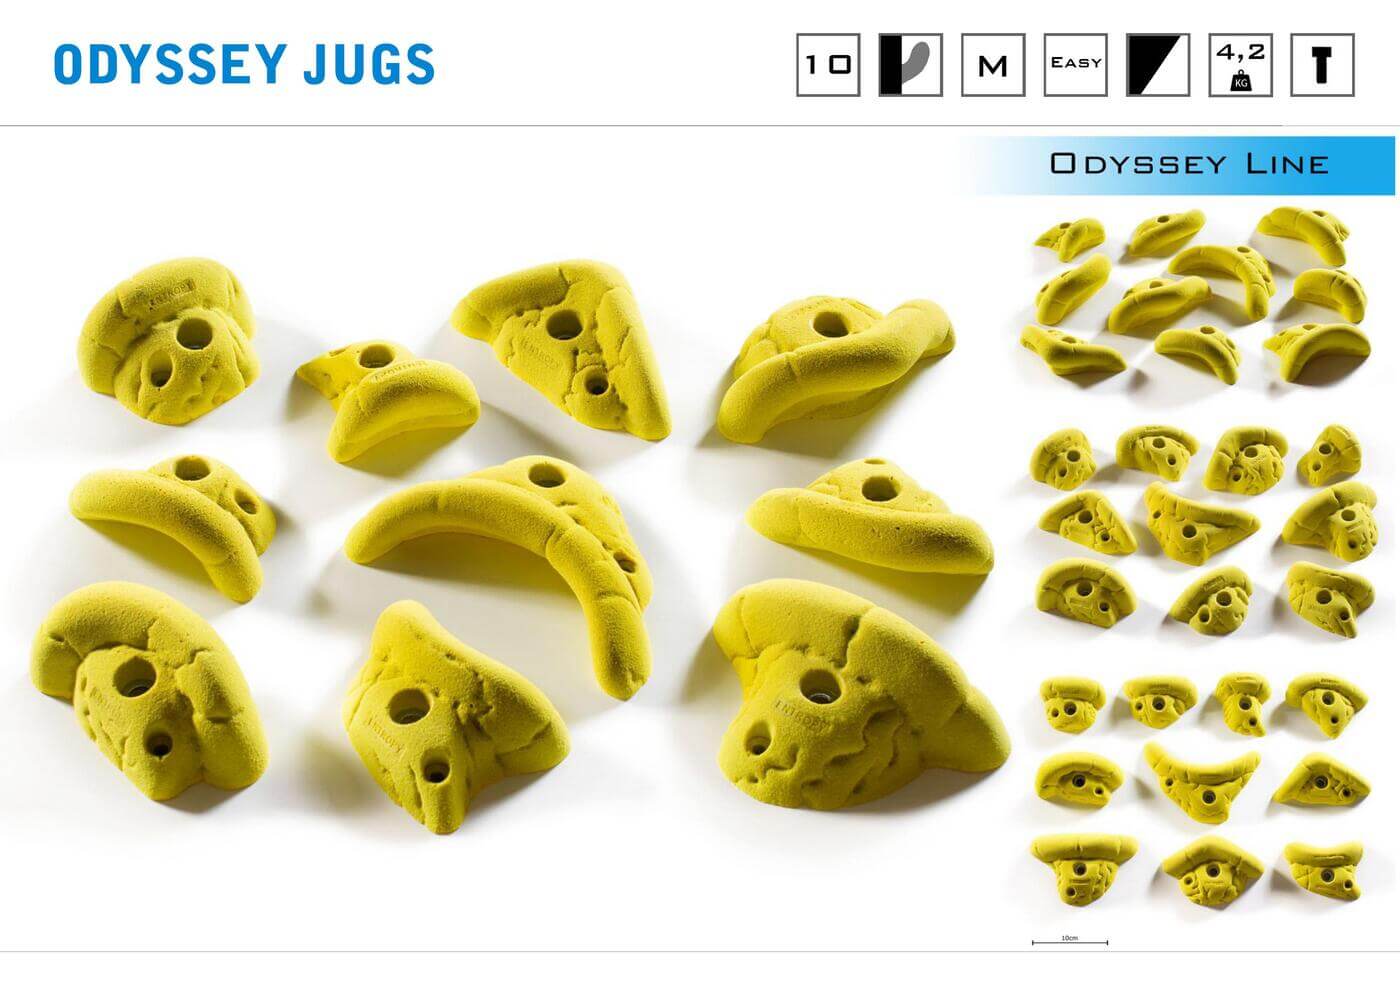 Odyssey jugs